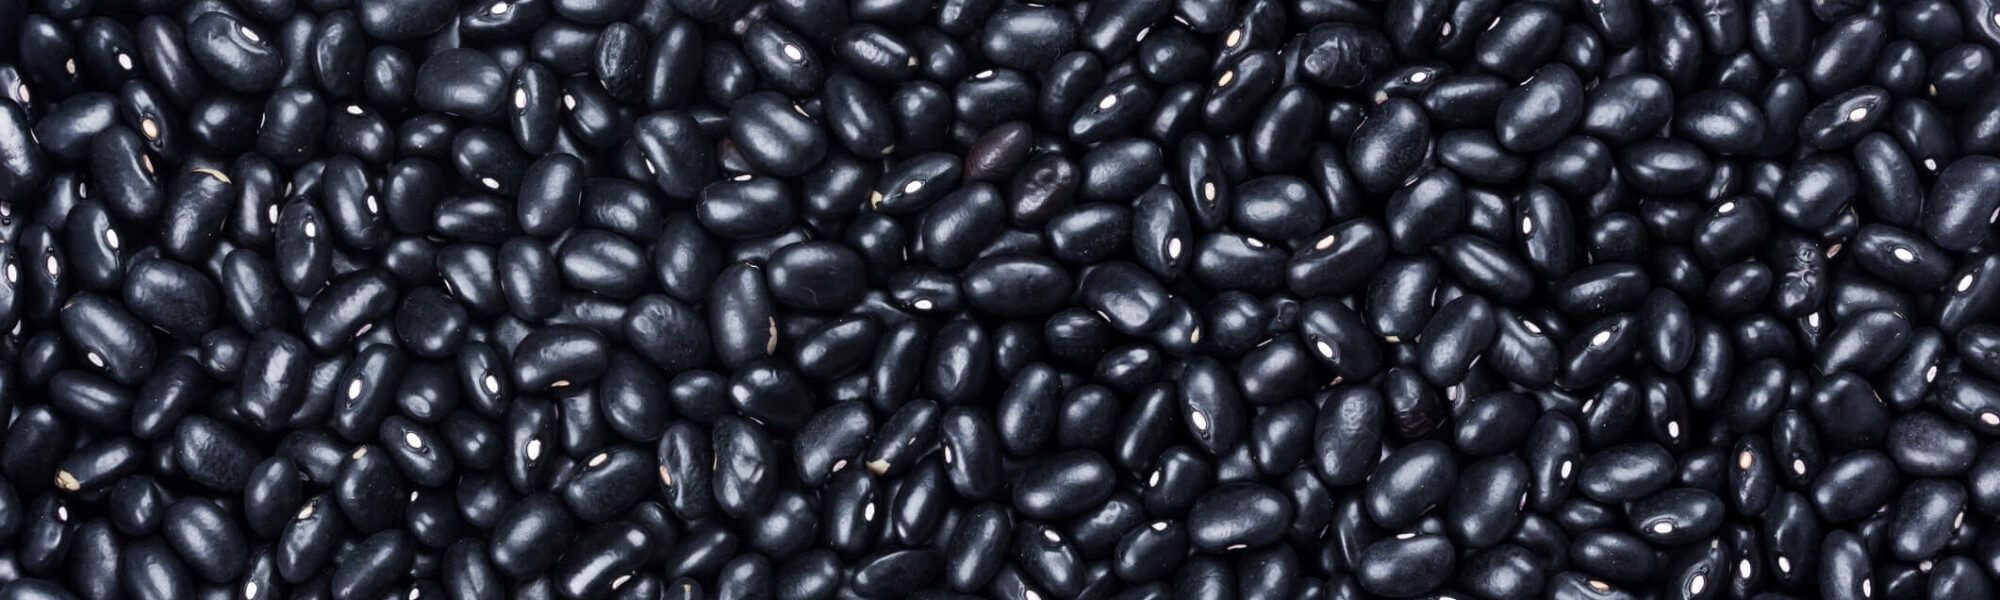 Black kidney beans